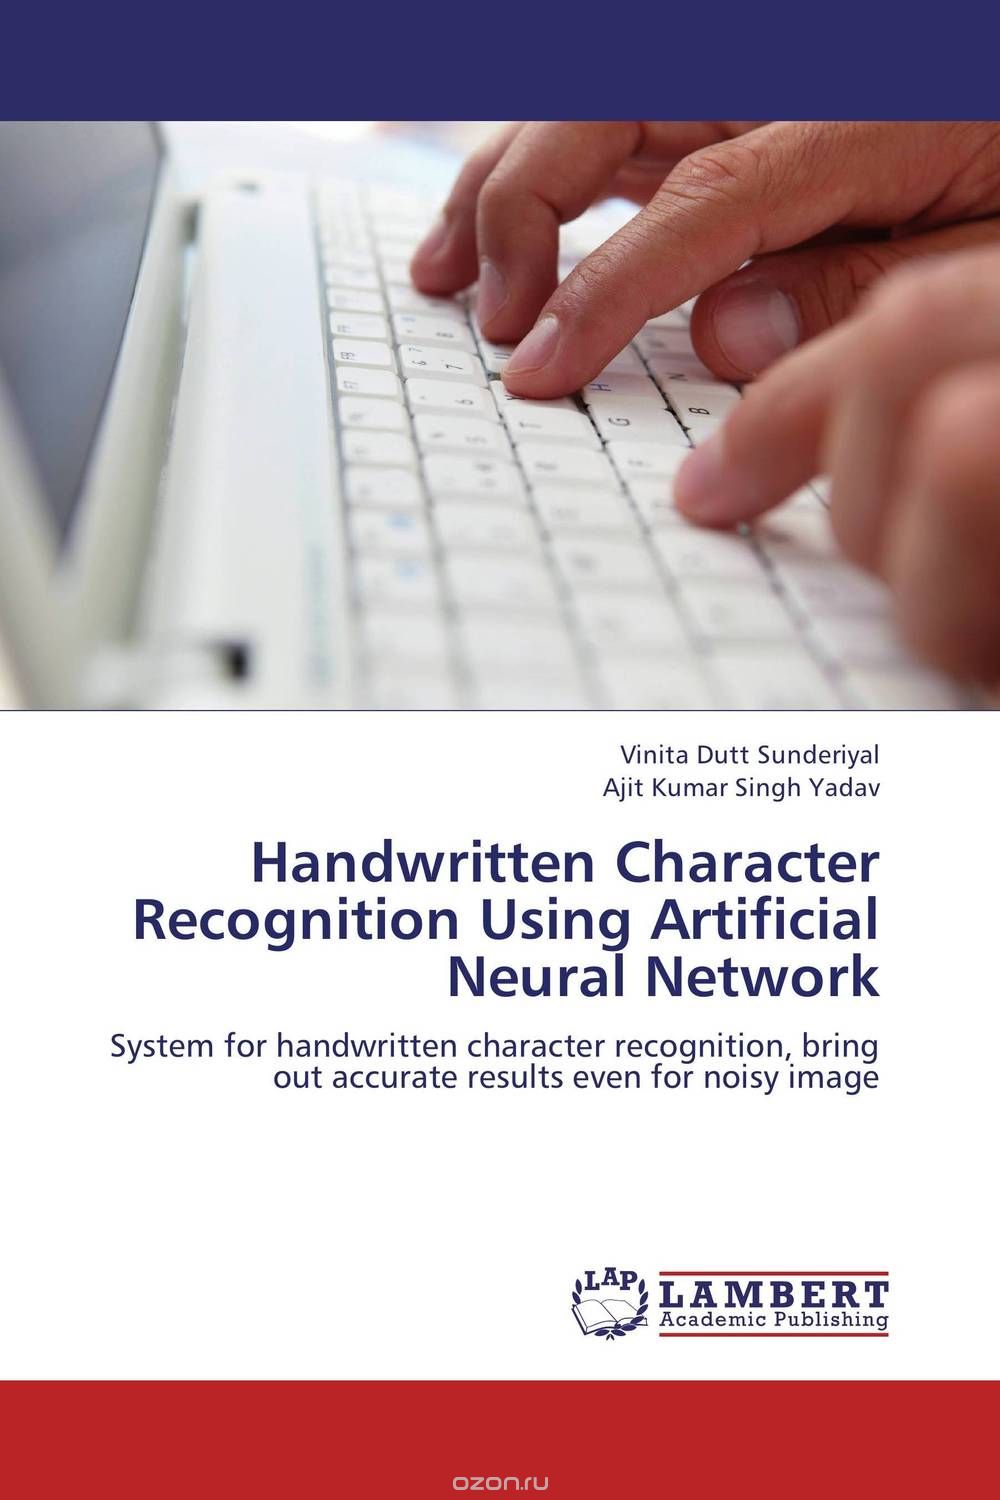 Скачать книгу "Handwritten Character Recognition Using Artificial Neural Network"